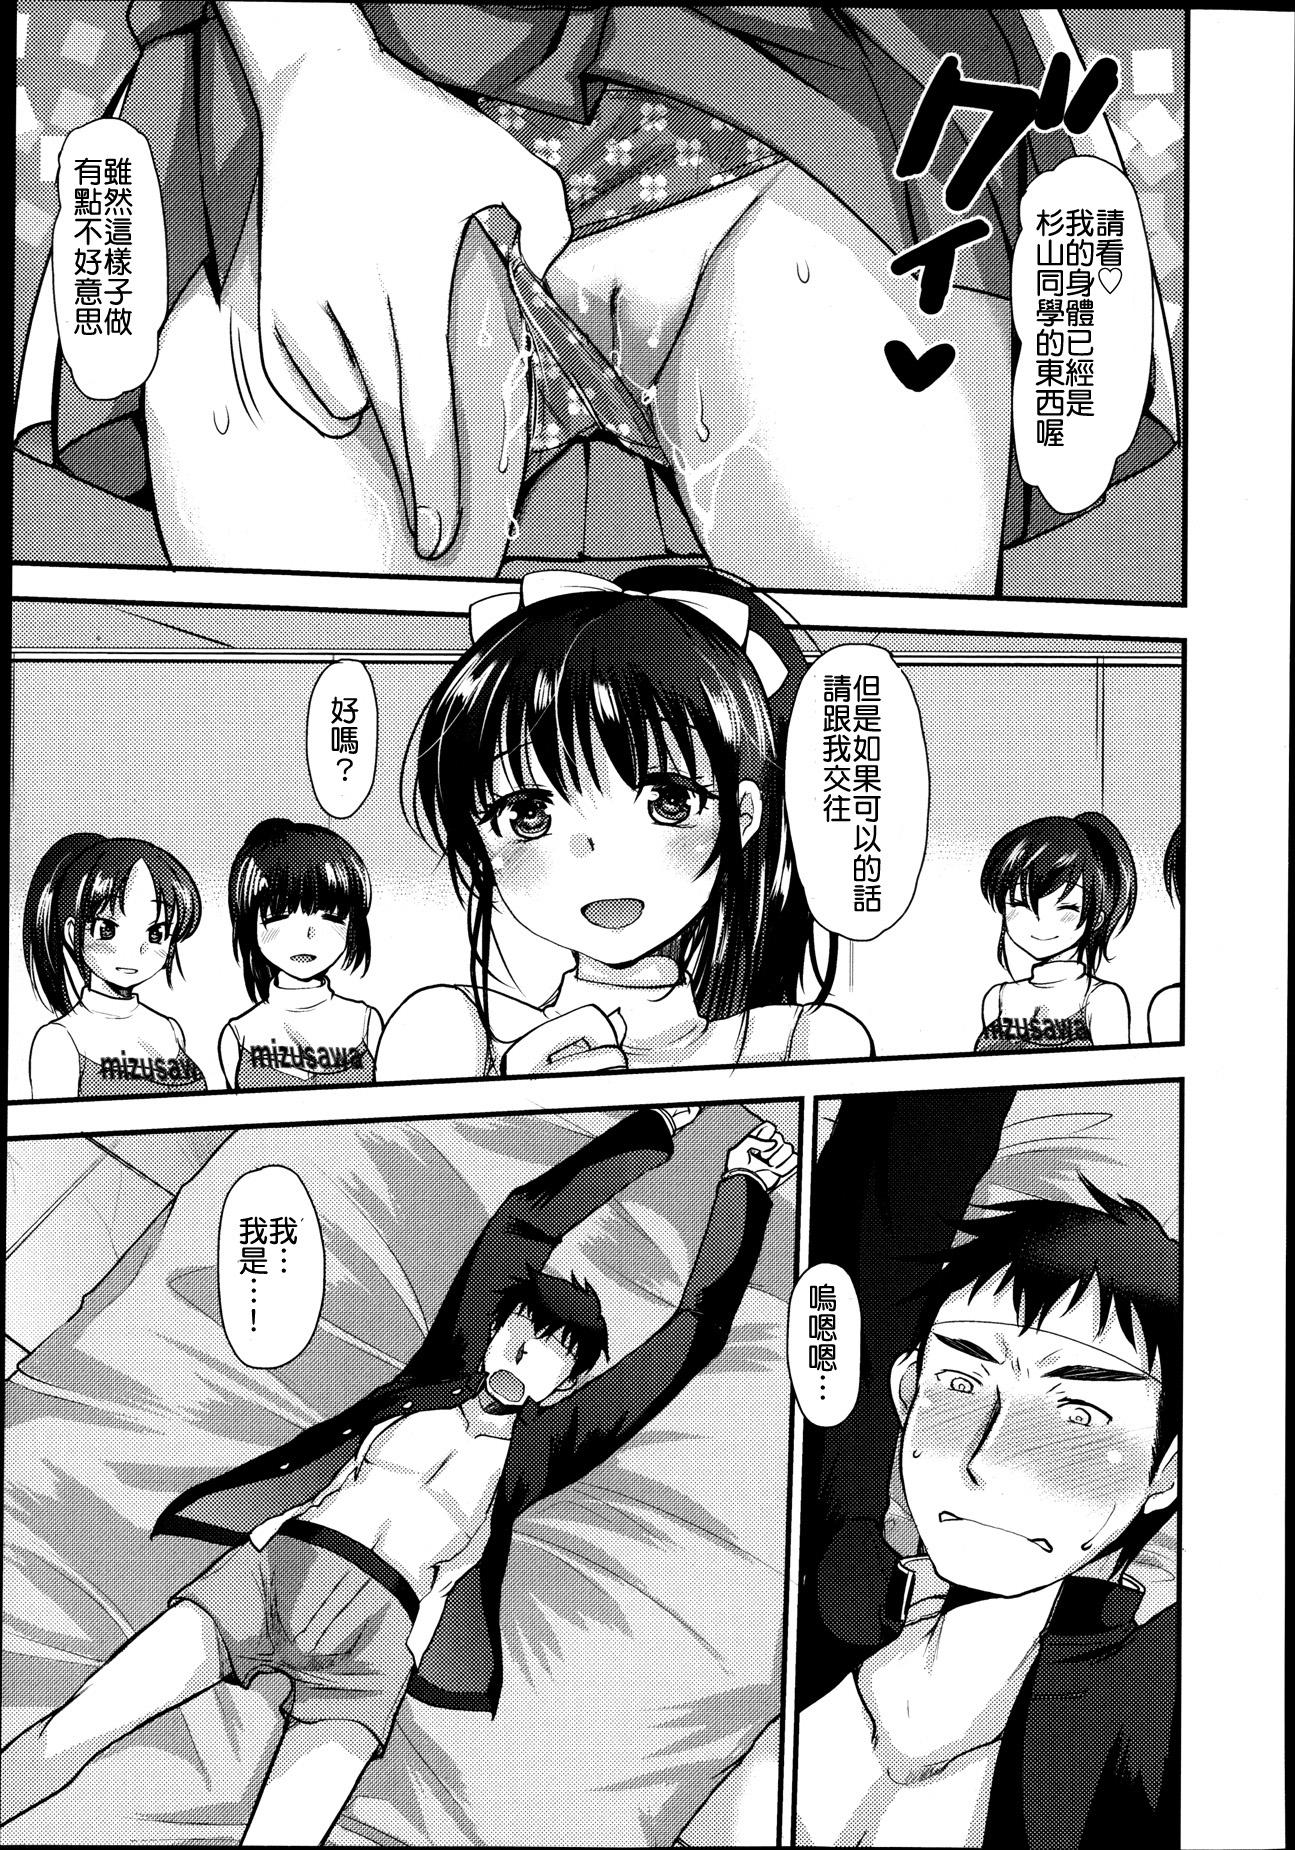 Sex Toys Watashi ja dame desu ka!? Peituda - Page 5